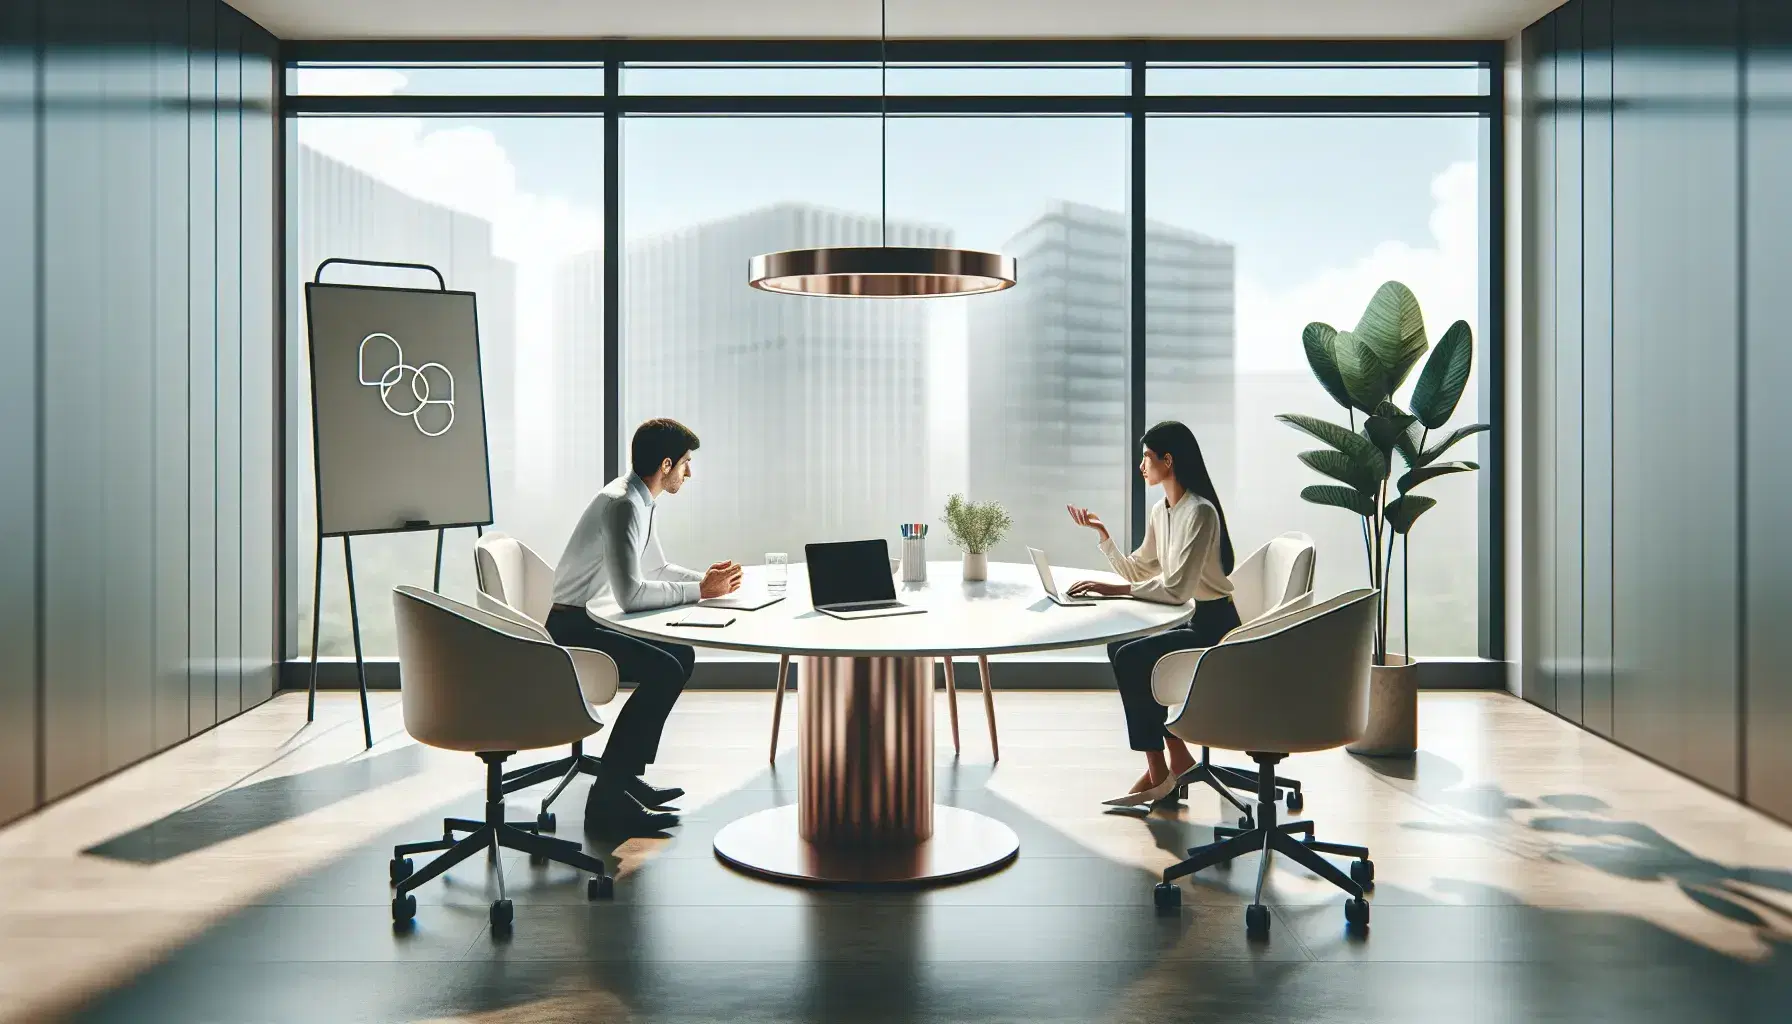 Oficina moderna con mesa redonda, sillas ergonómicas, laptop, smartphone y pizarra en blanco, dos profesionales trabajando y planta decorativa.